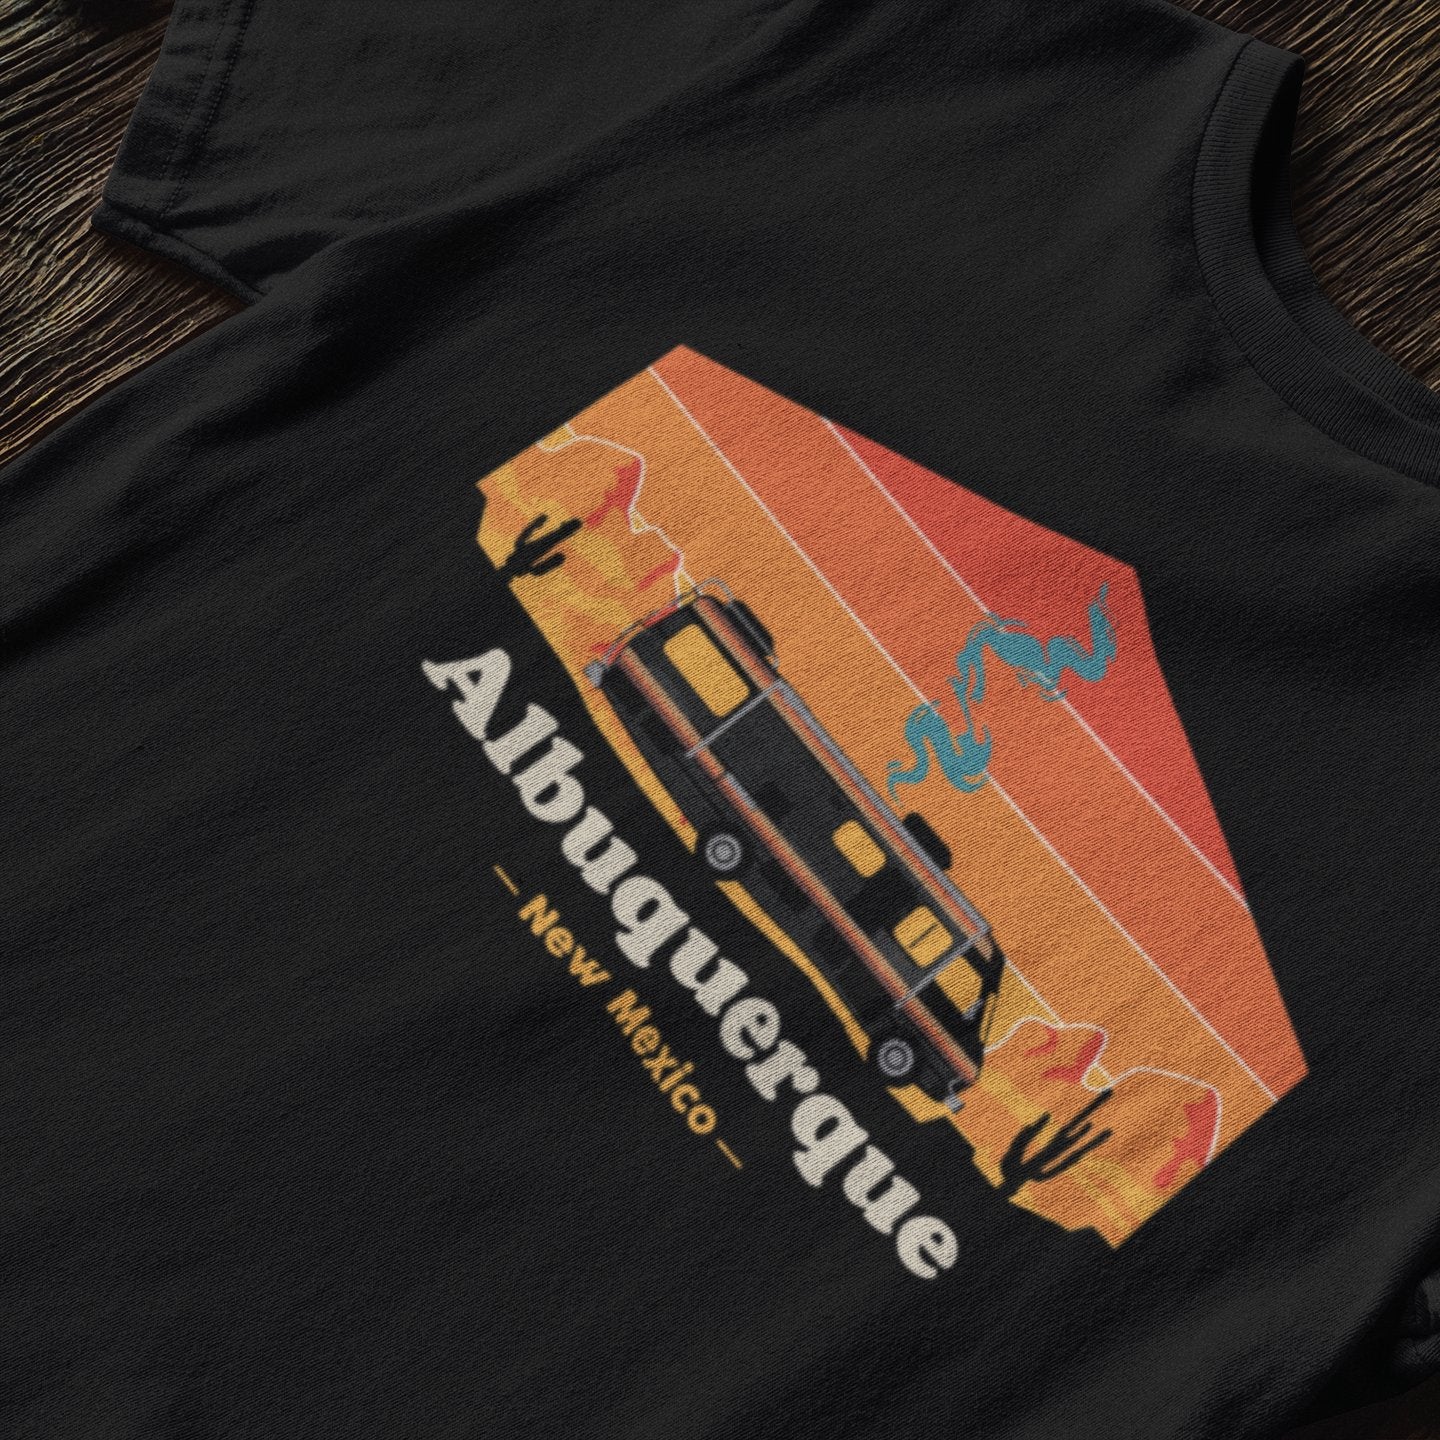 Albuquerque Breaking Bad - T-Shirt